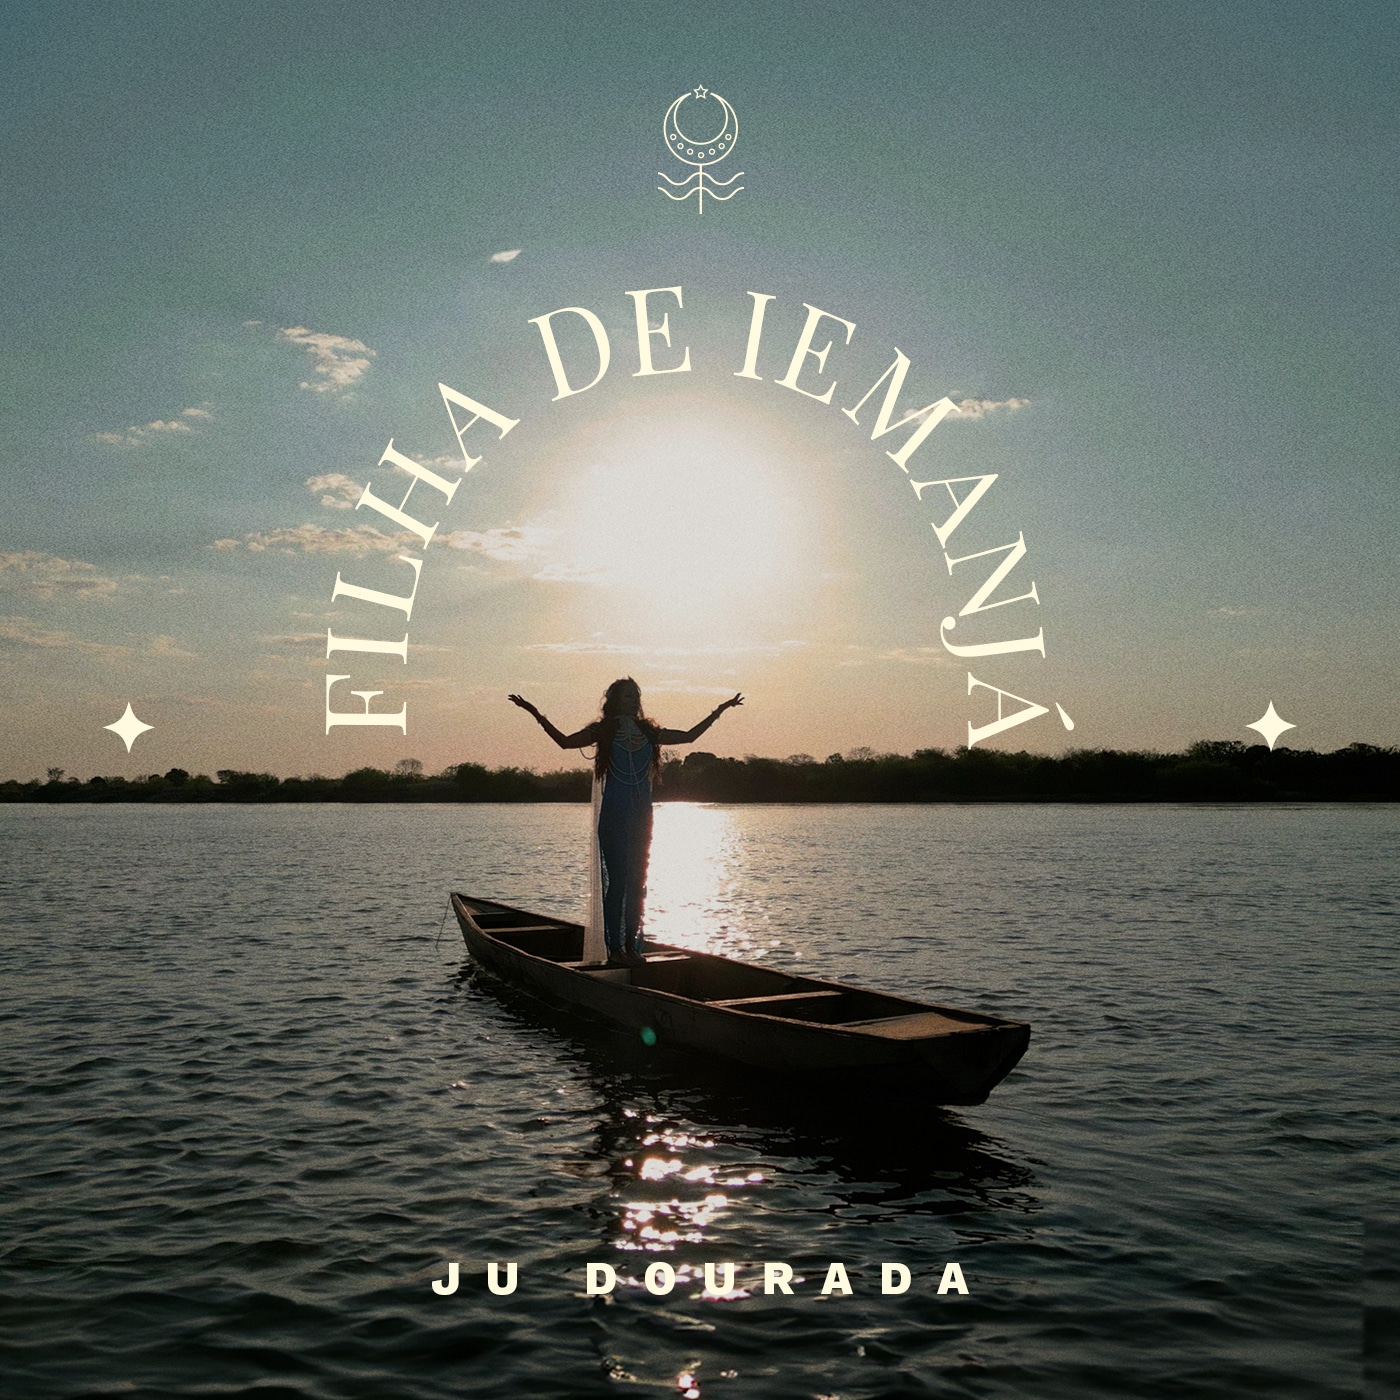 revistaprosaversoearte.com - Ju Dourada faz viagem pessoal pelo Rio São Francisco no clipe e single 'Filha de Iemanjá'